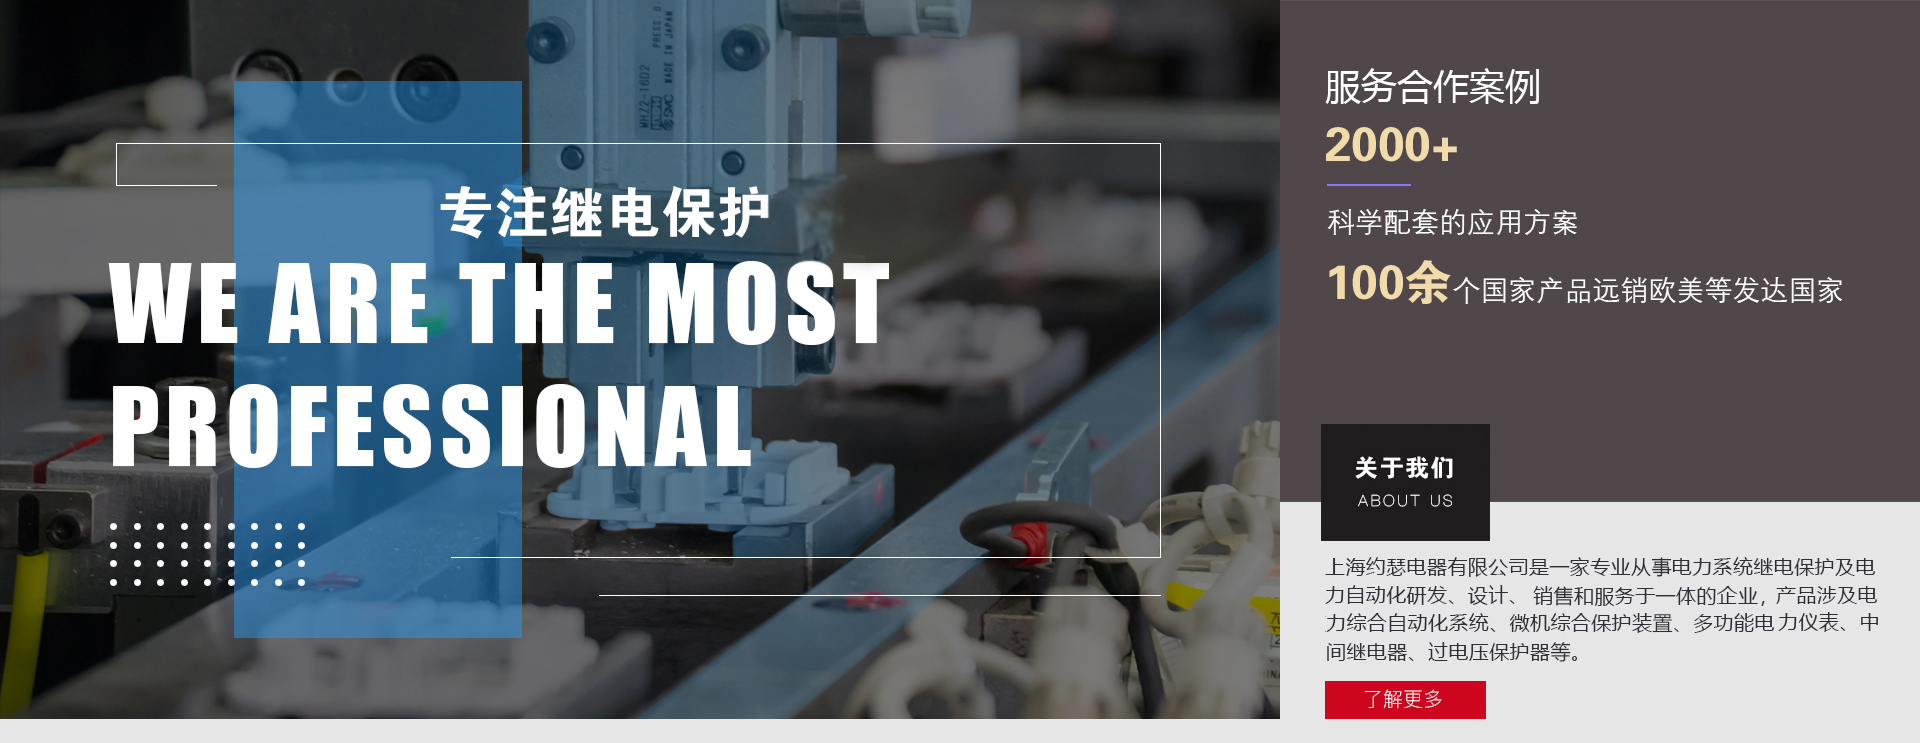 上海约瑟电器公司多年来专注于继电保护及电力自动化研发、生产、服务等领域